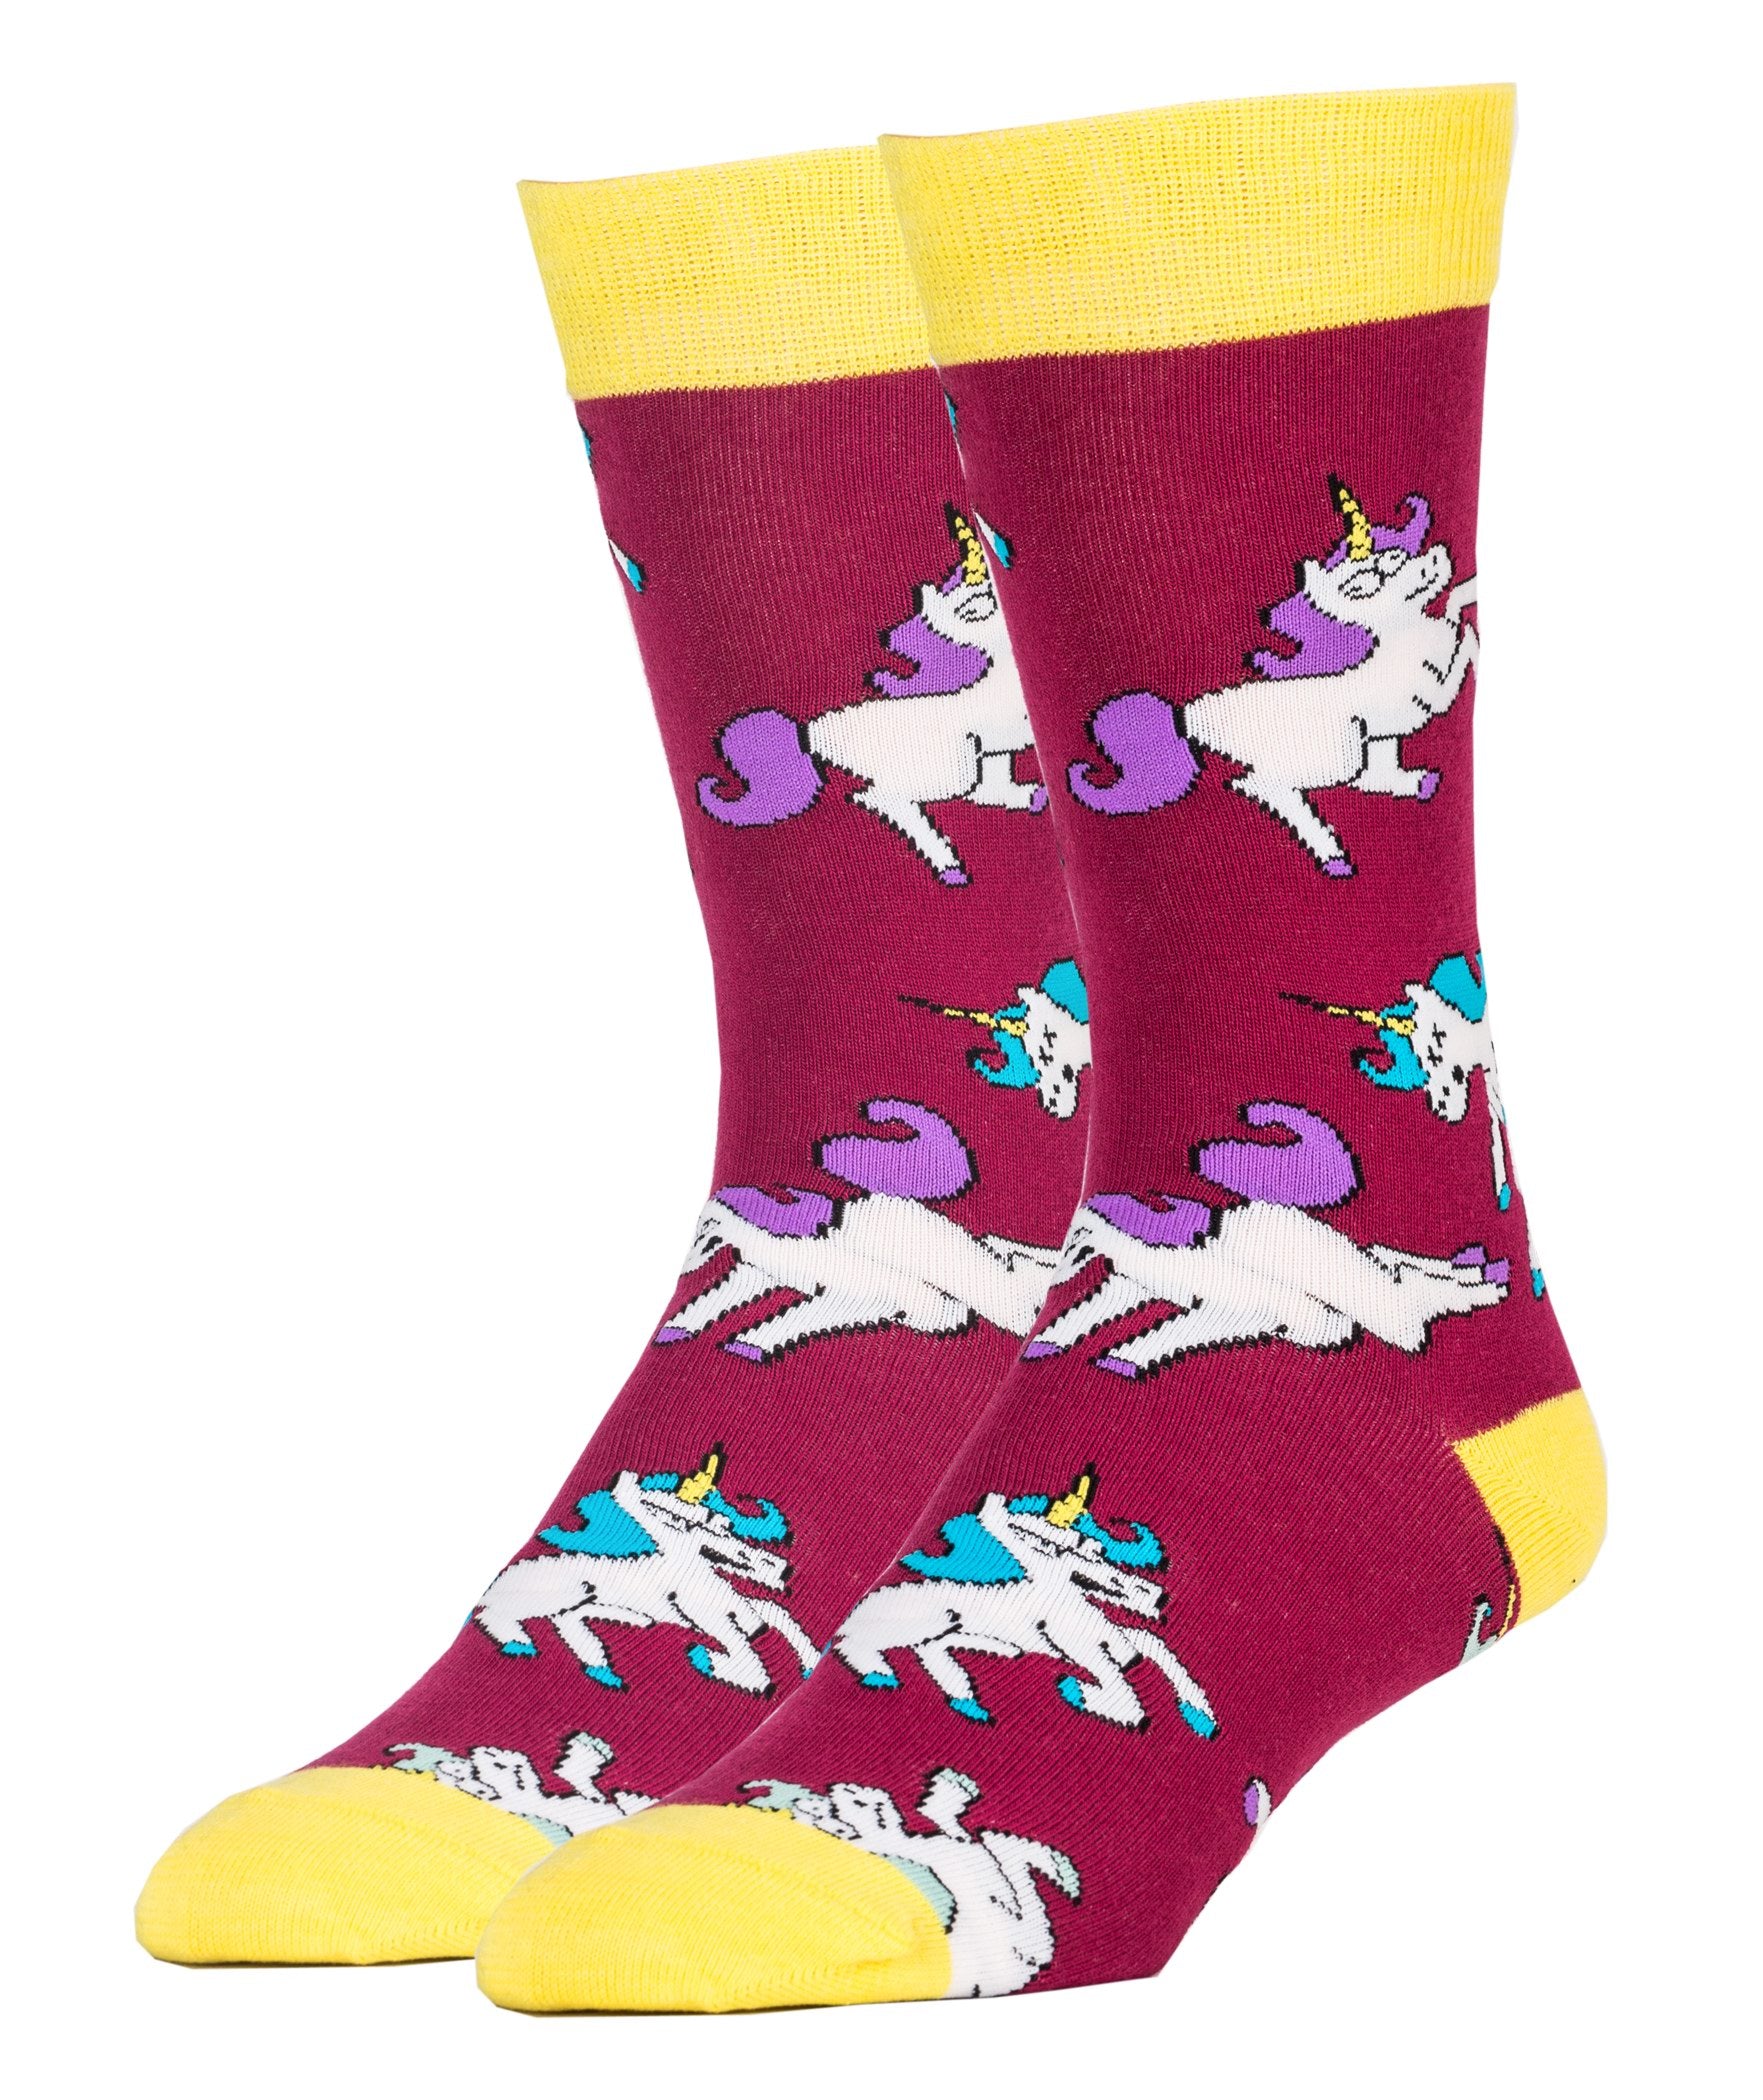 Unicorn War Socks | Novelty Crew Socks For Men